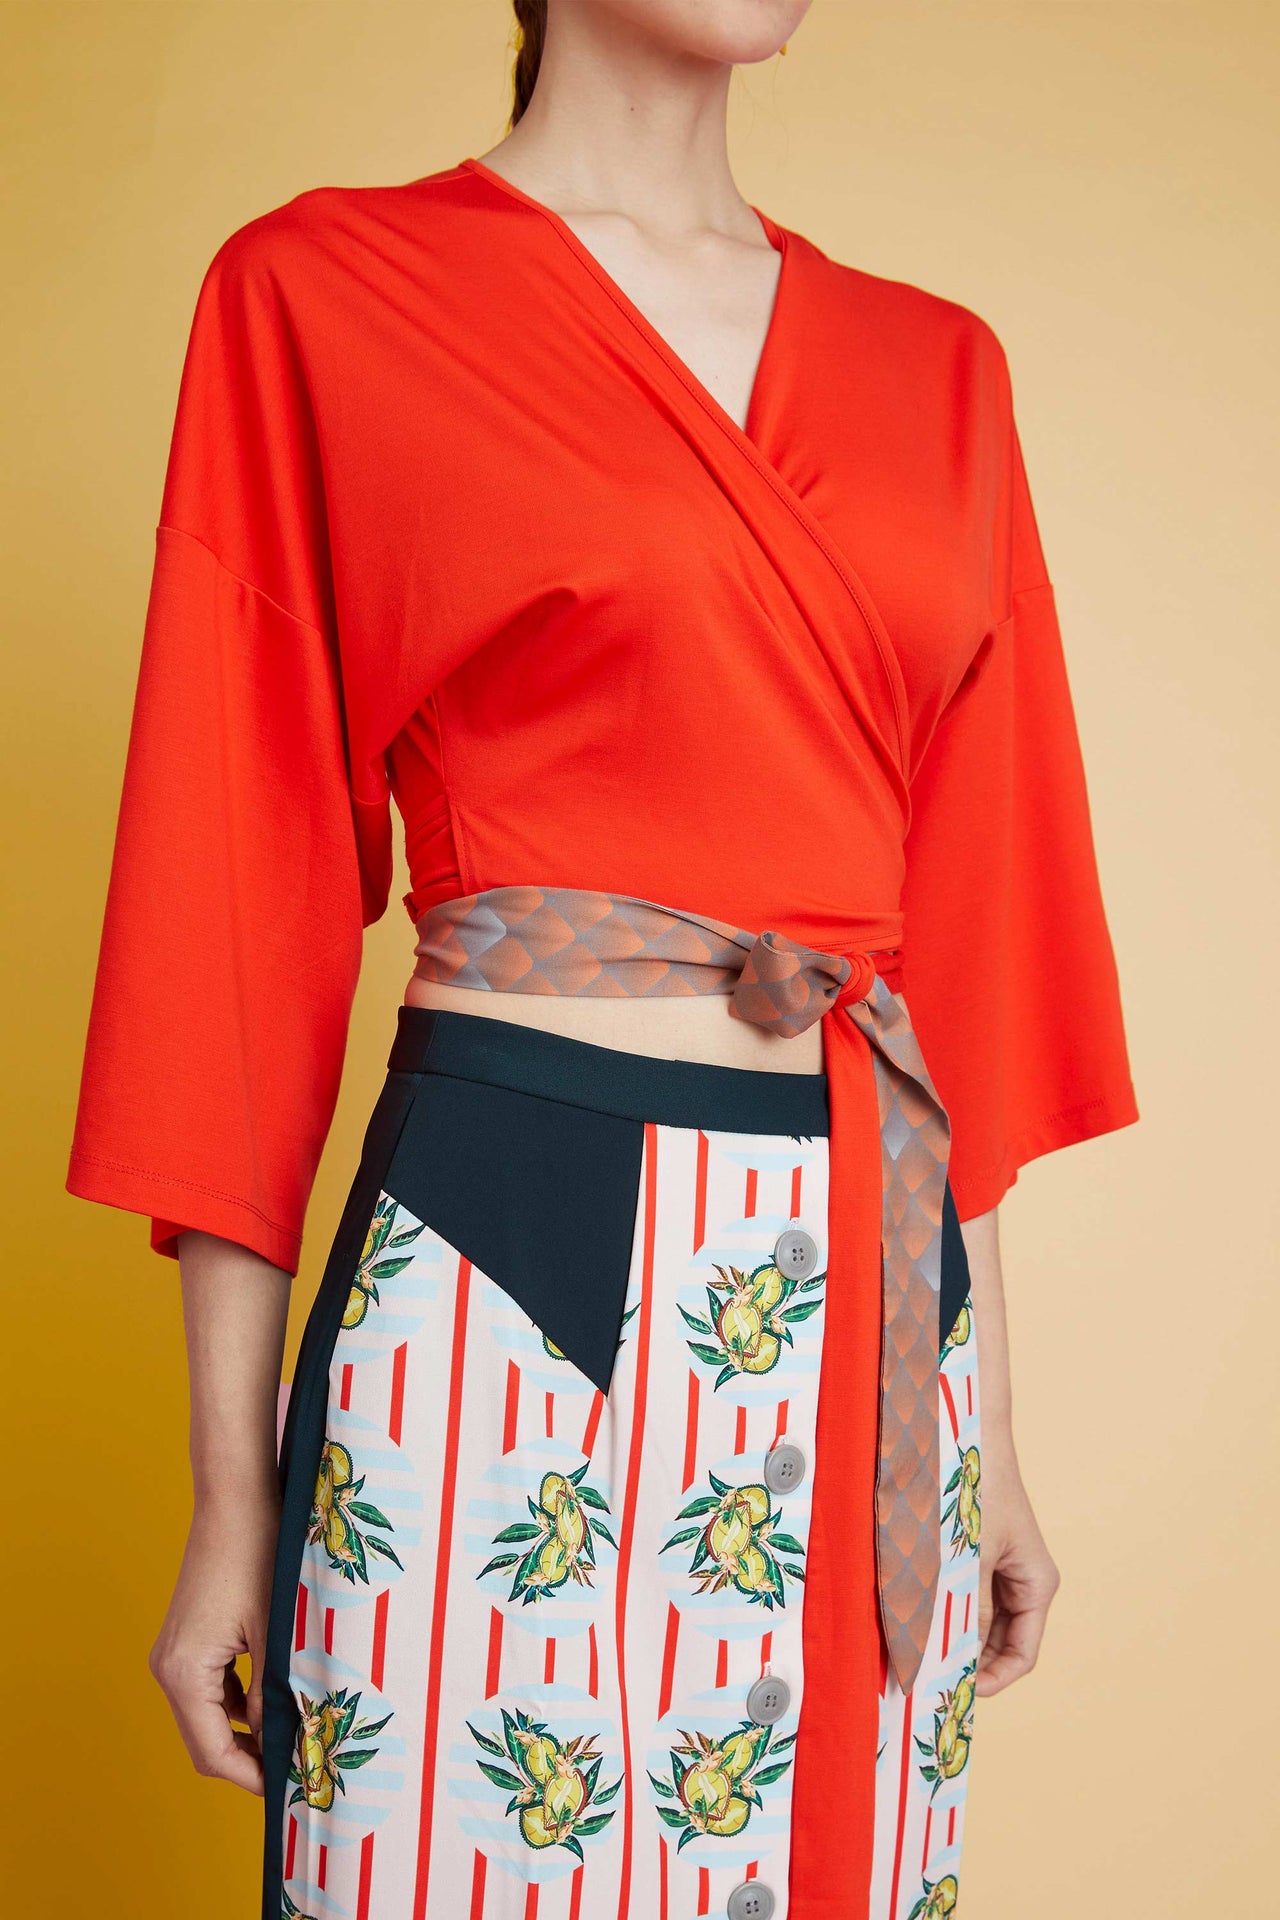 Reckless Ericka x SIA — Red Cropped Kimono Wrap Top